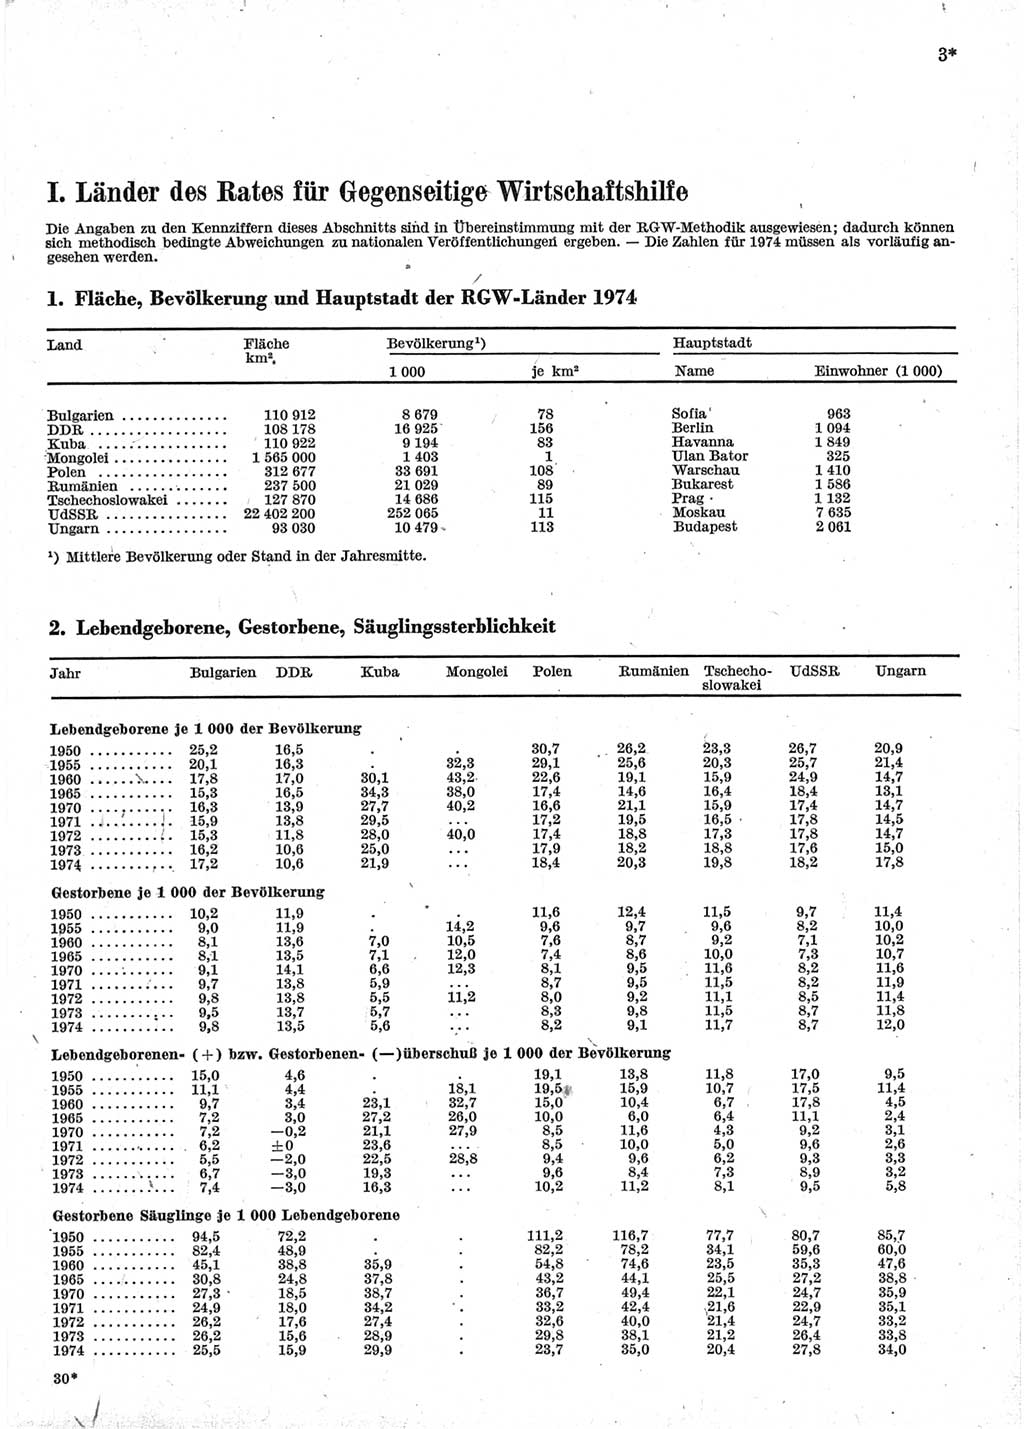 Statistisches Jahrbuch der Deutschen Demokratischen Republik (DDR) 1976, Seite 3 (Stat. Jb. DDR 1976, S. 3)